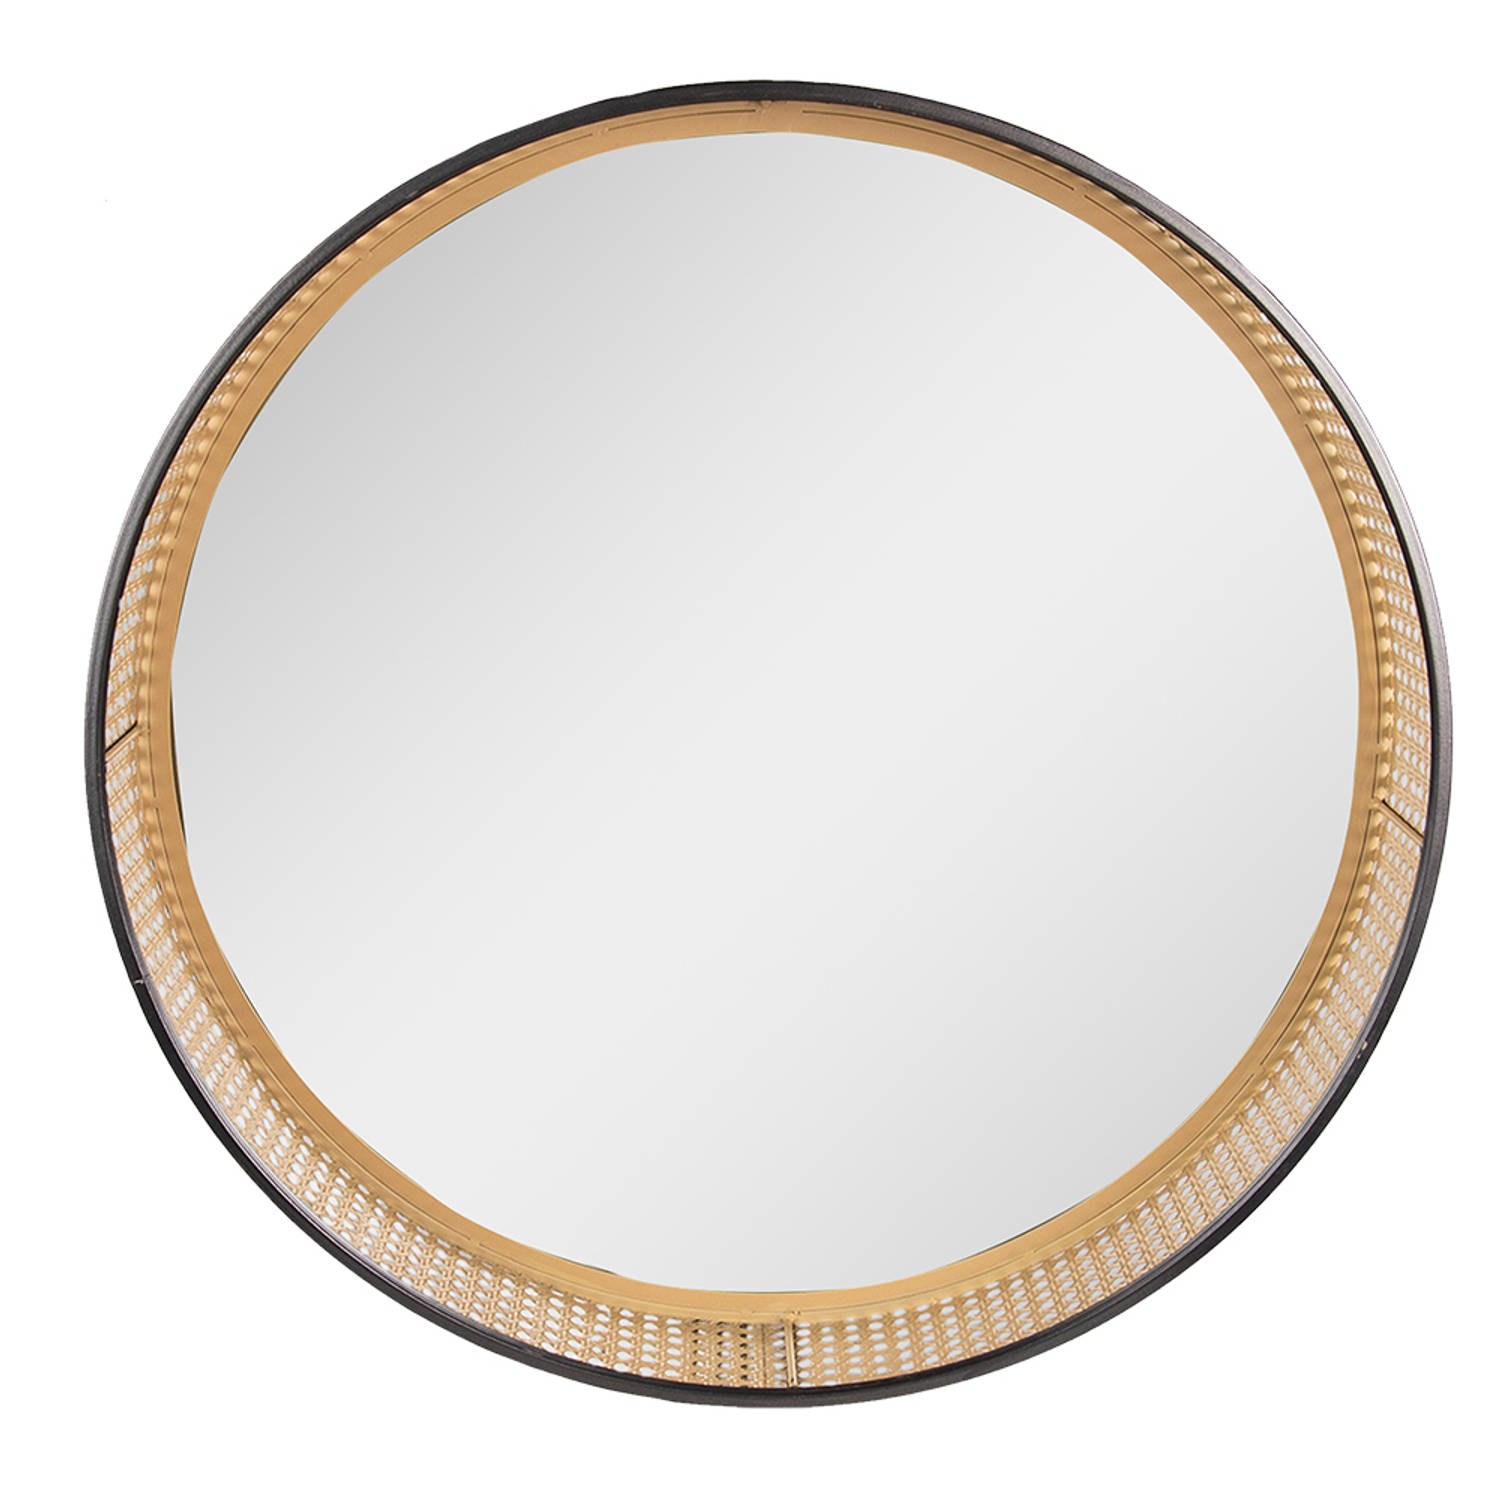 HAES DECO - Ronde Spiegel met Rotan rand - Kleur Bruin - Formaat Ø 60x10 cm - Materiaal Metaal / Glas - Wandspiegel, Spiegel rond